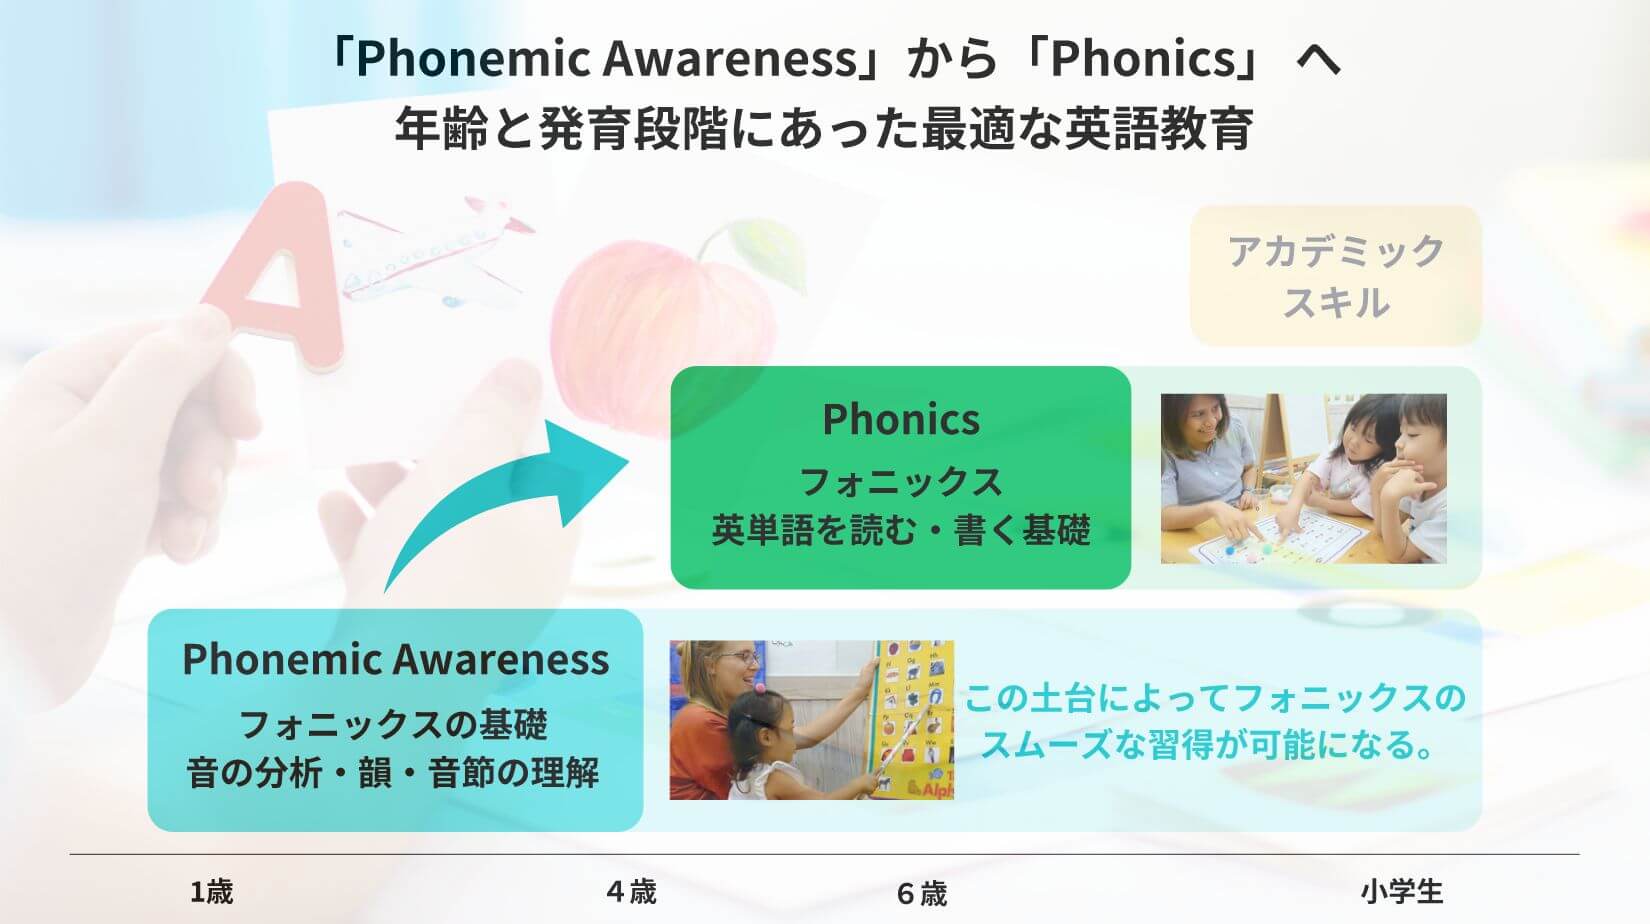 「Phonemic Awareness」から「Phonics」 へ 年齢と発育段階にあった最適な英語教育